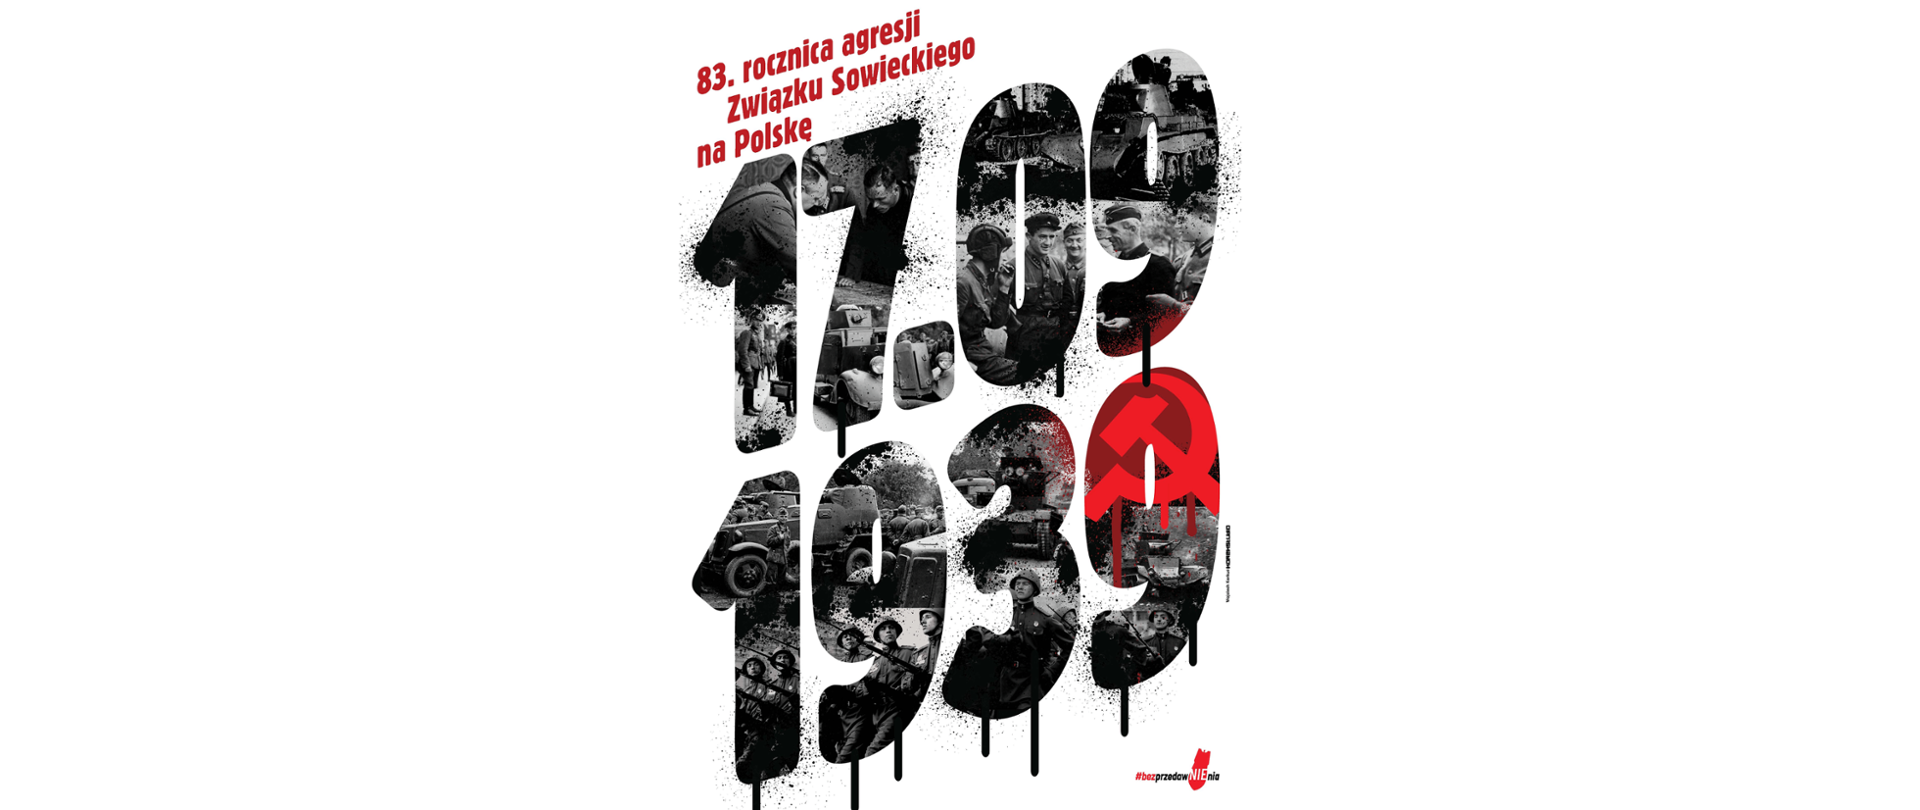 17 września – zapowiedź wydarzeń związanych z 83. rocznicą sowieckiej agresji na Polskę